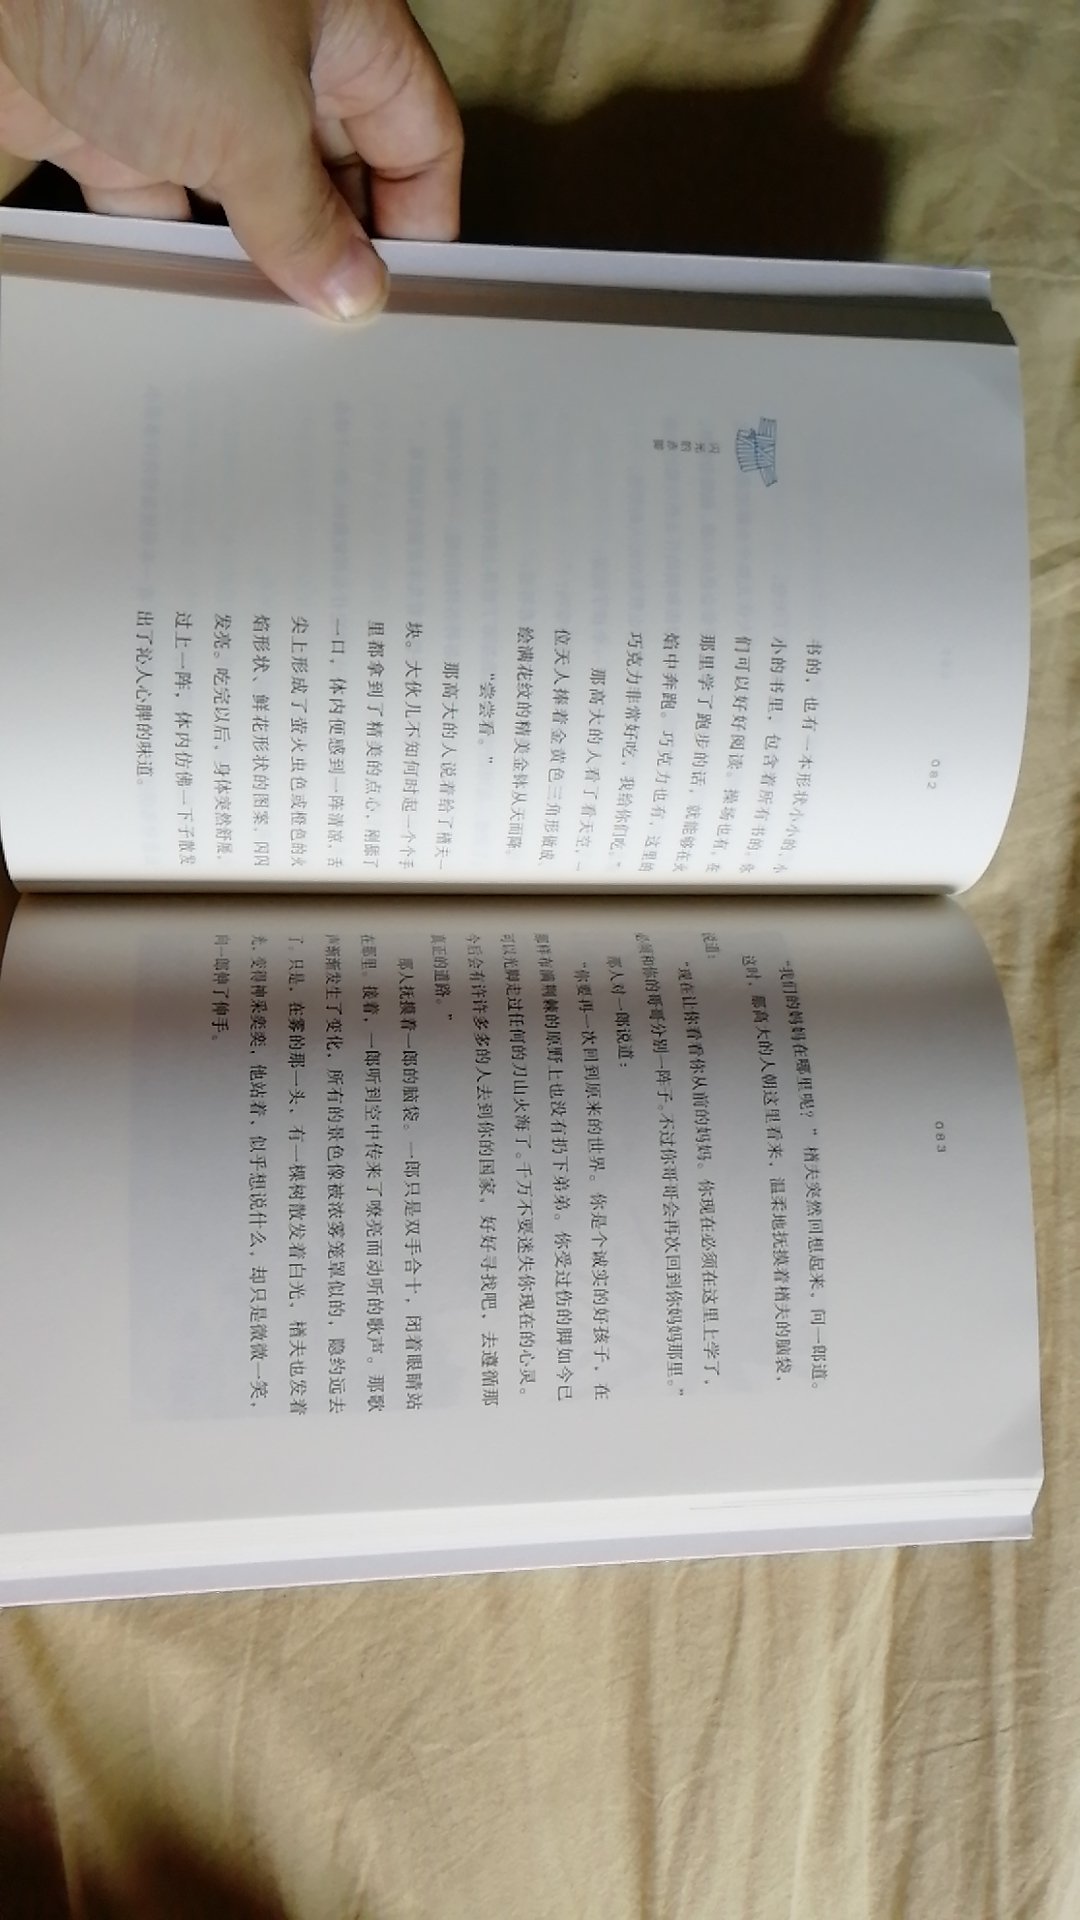 宫泽贤治的书一直想看，这次虽然单本，但让我凑齐了五本一套，真的很不错。